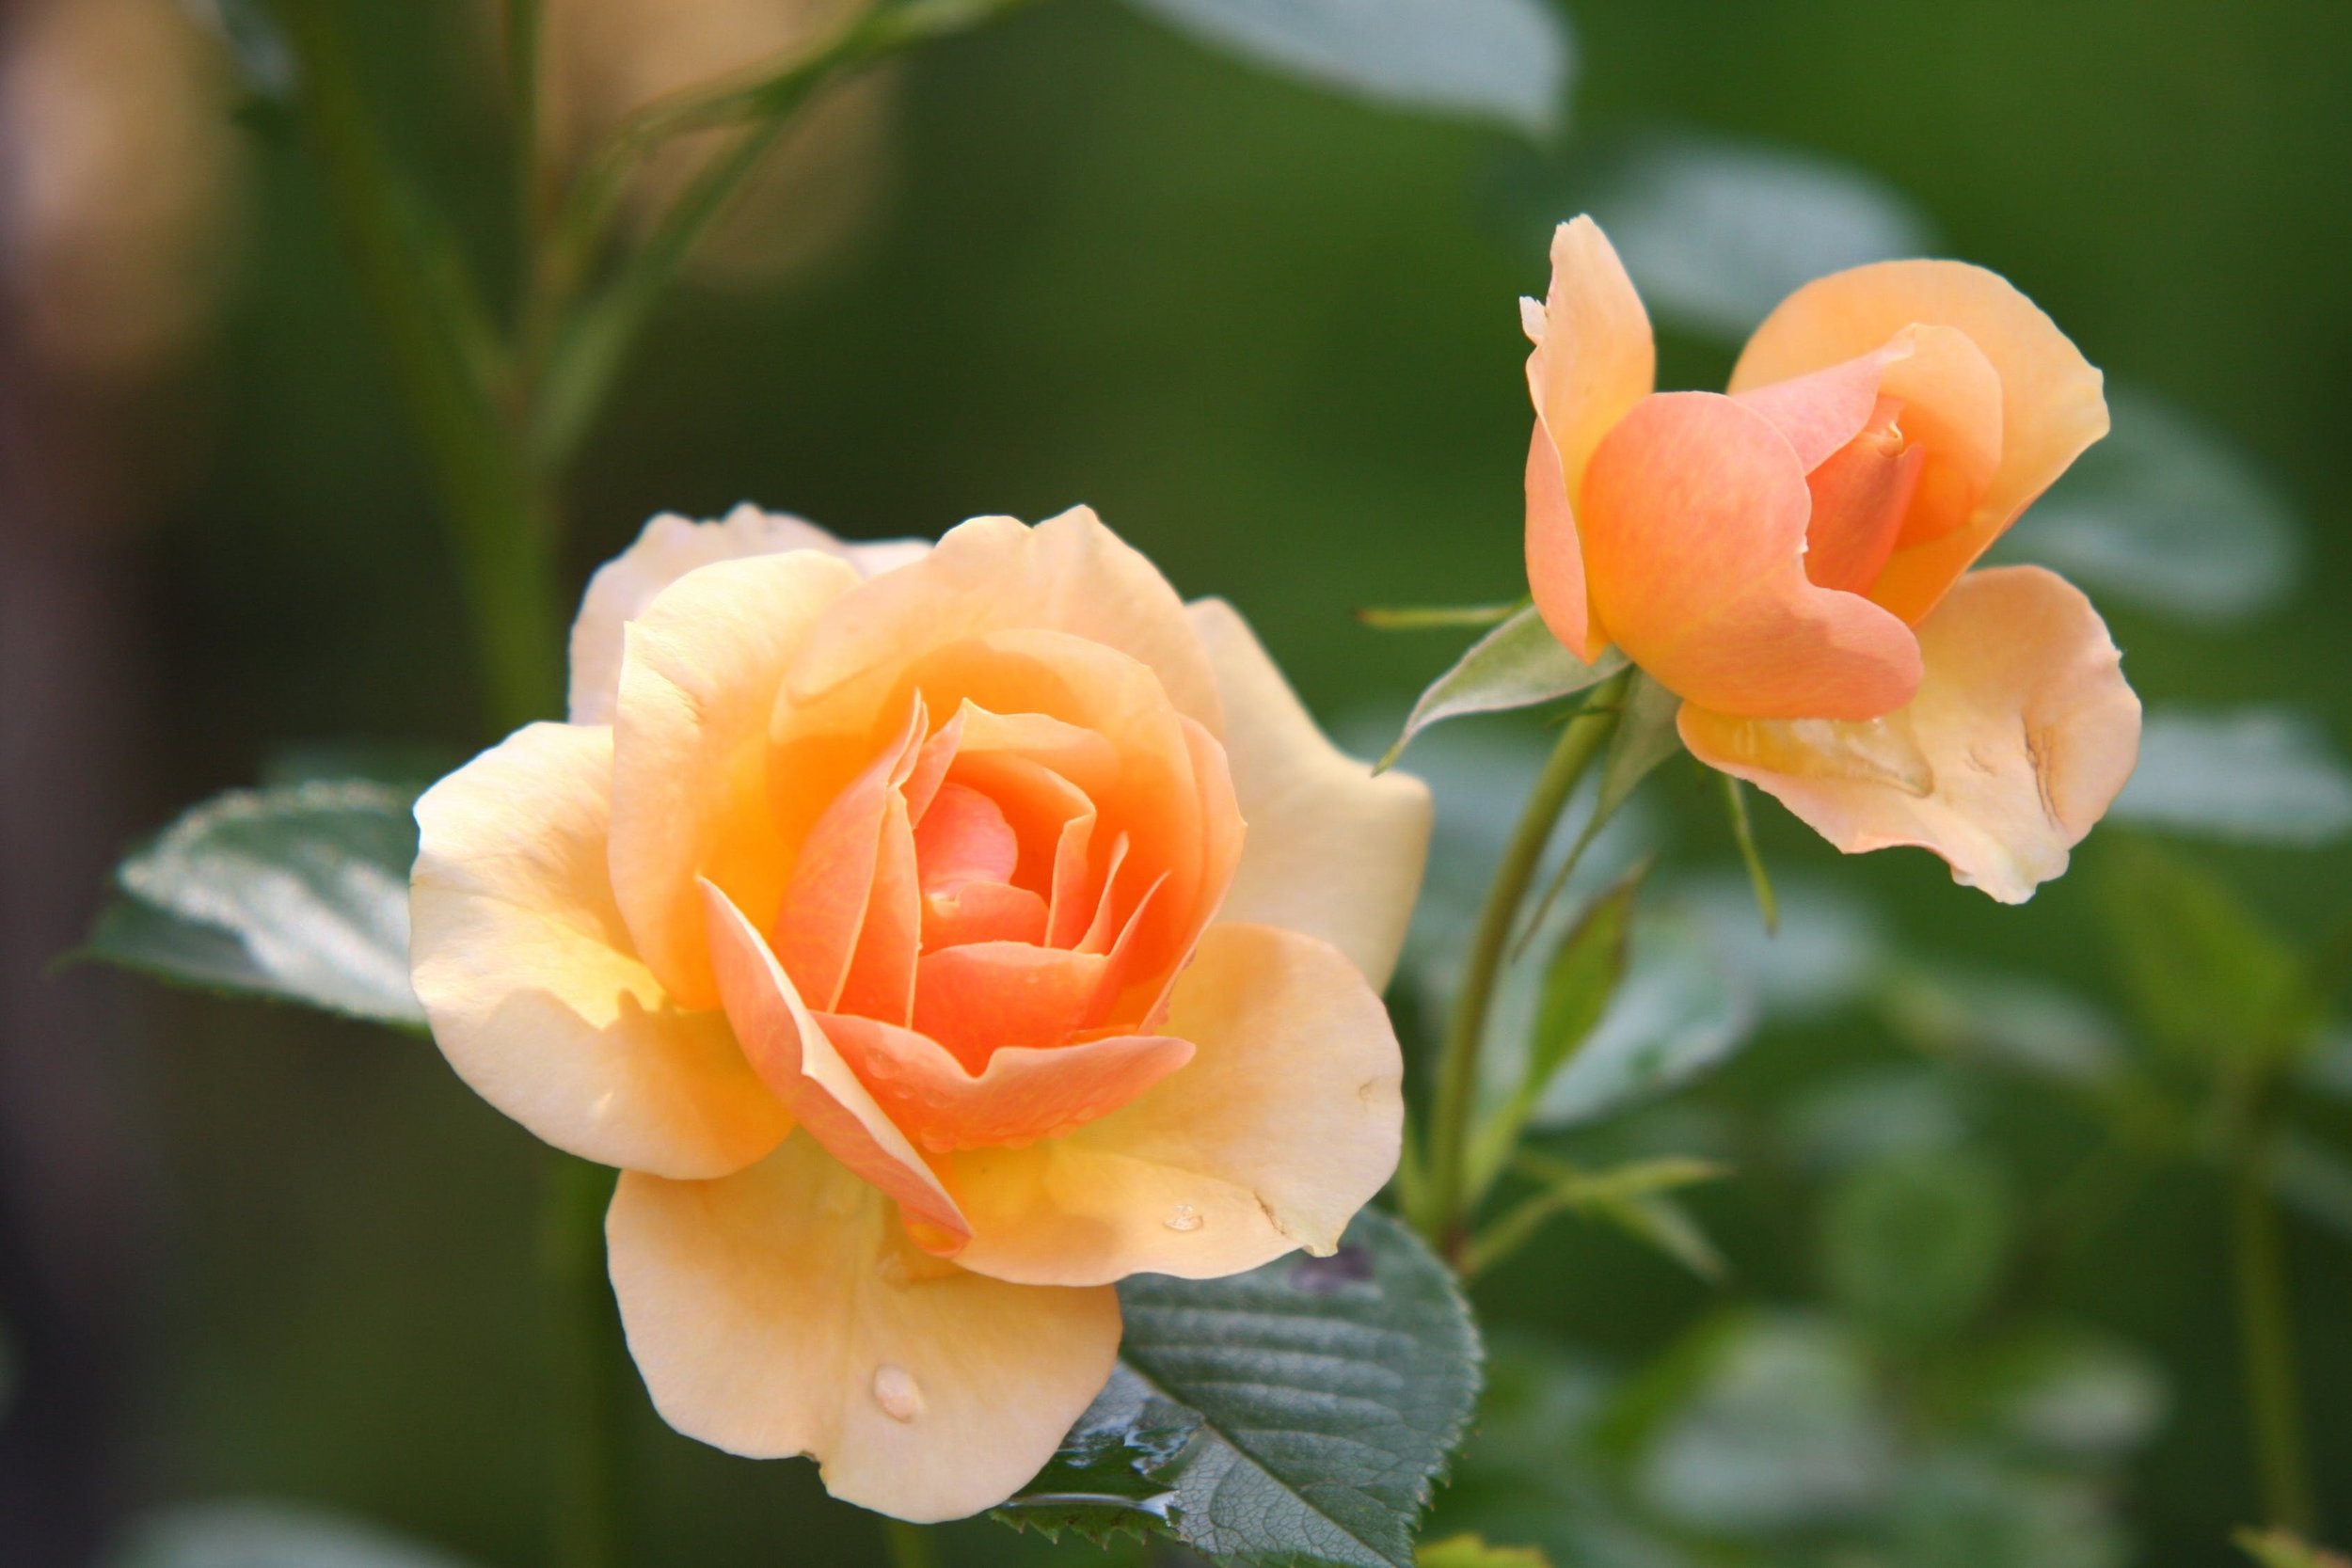 103 OB20 rose-flower-blossom-bloom-39517.jpeg